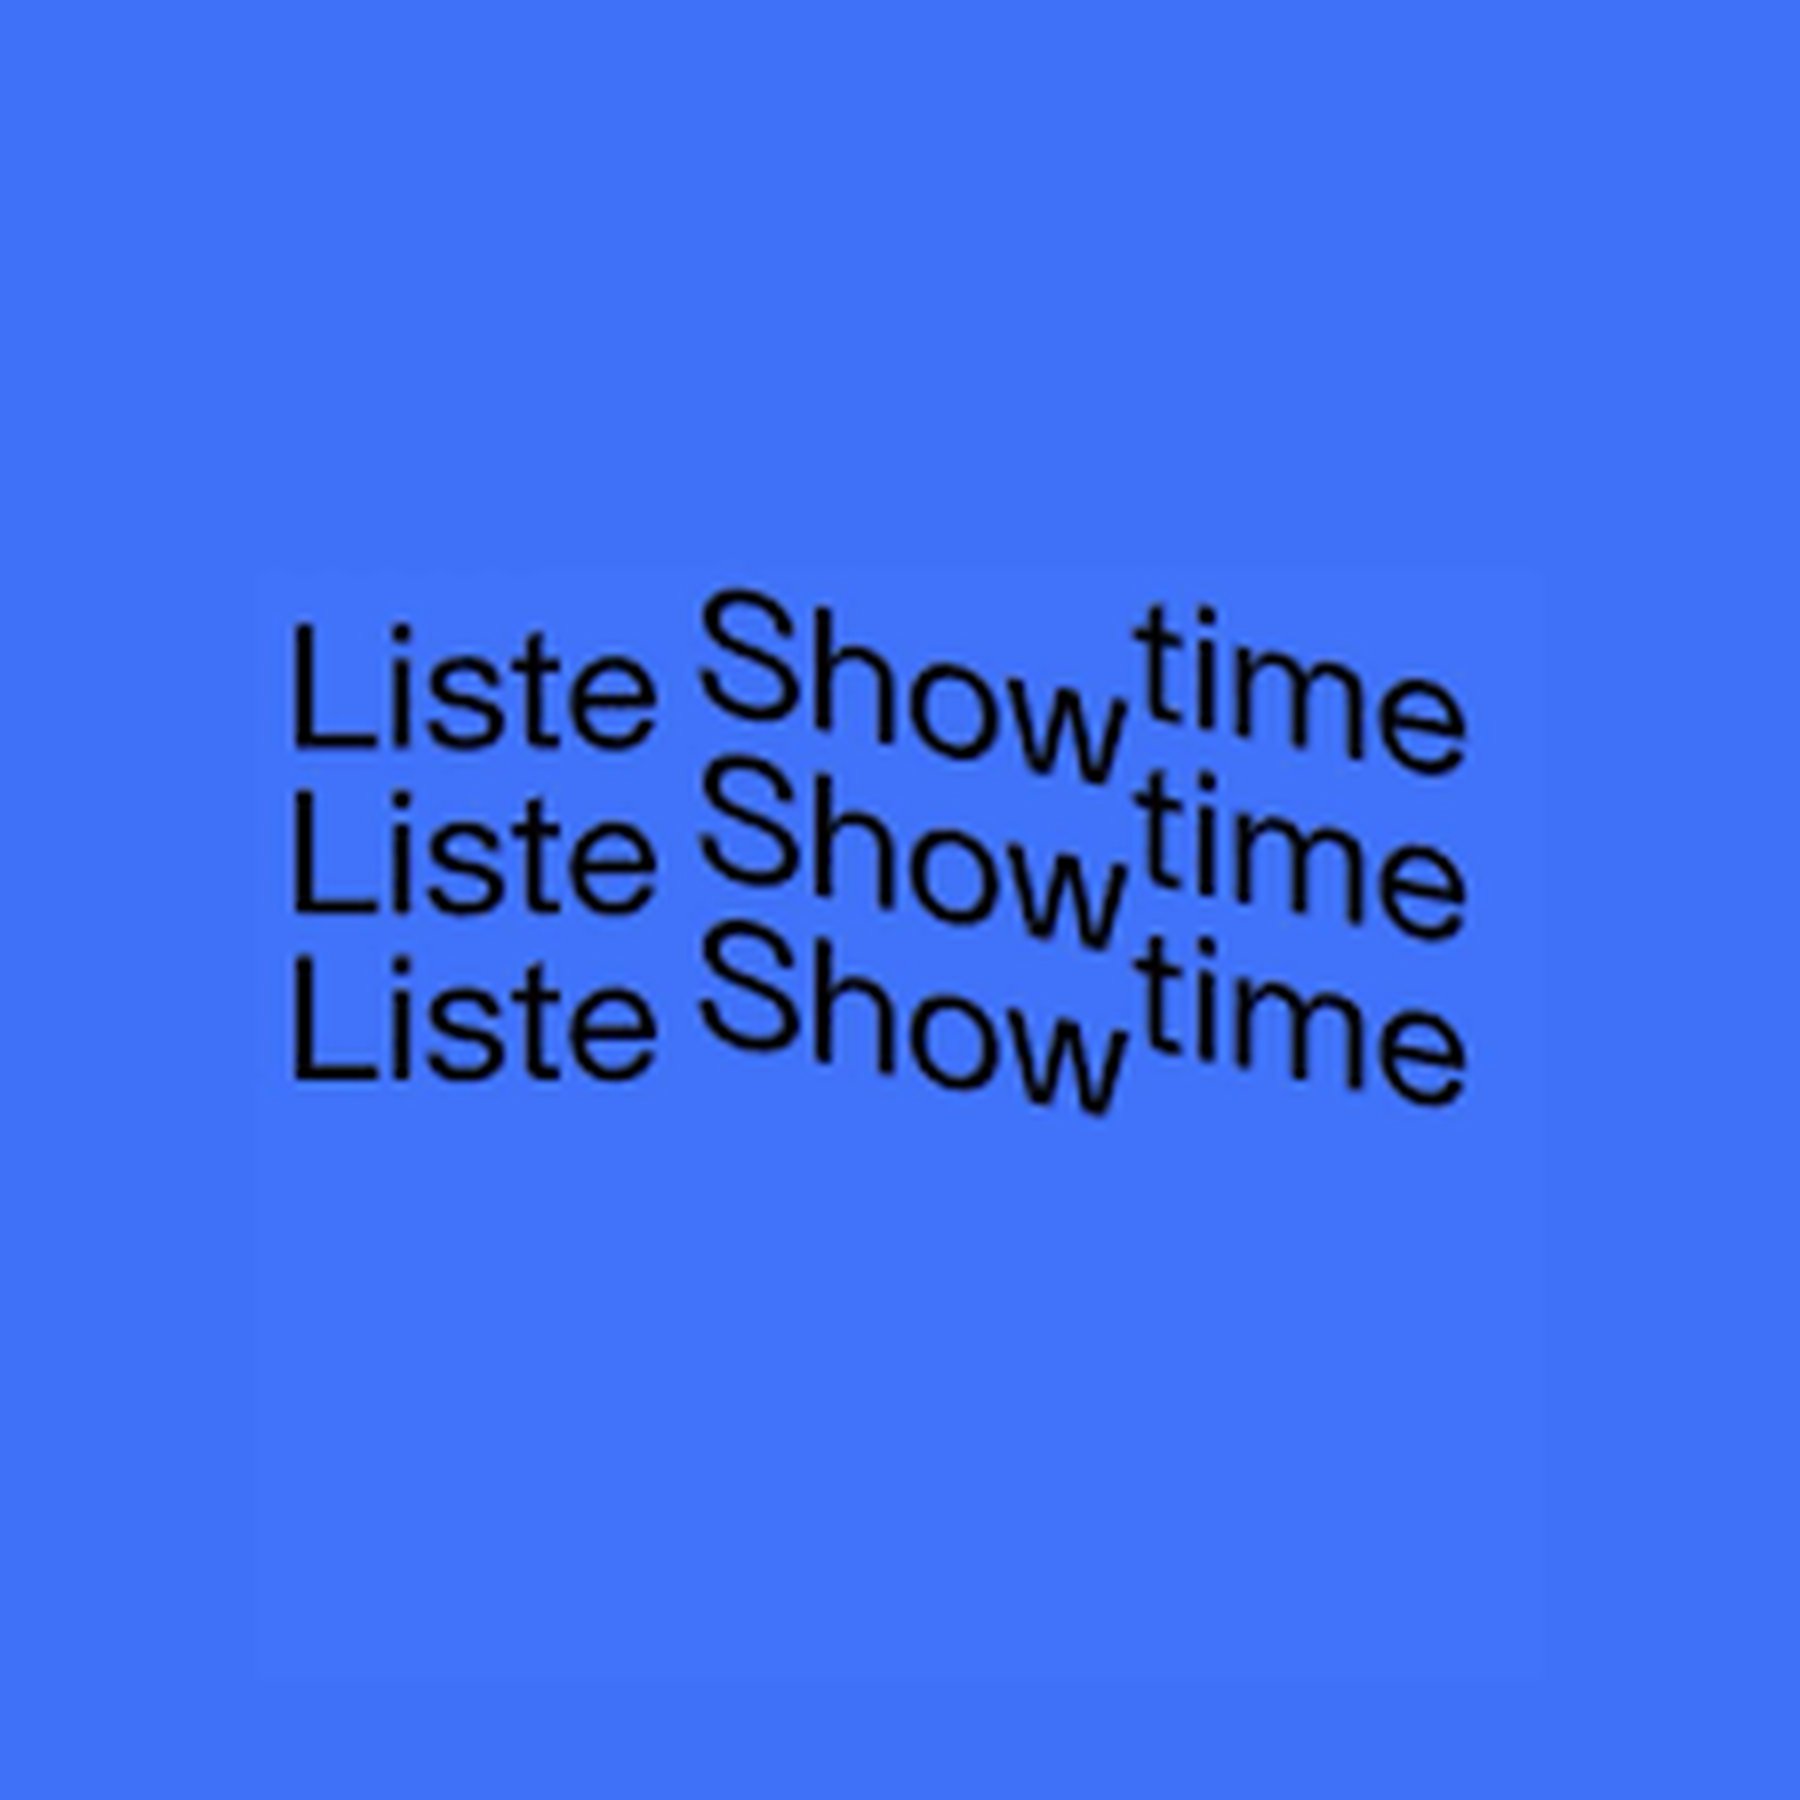 Liste showtime